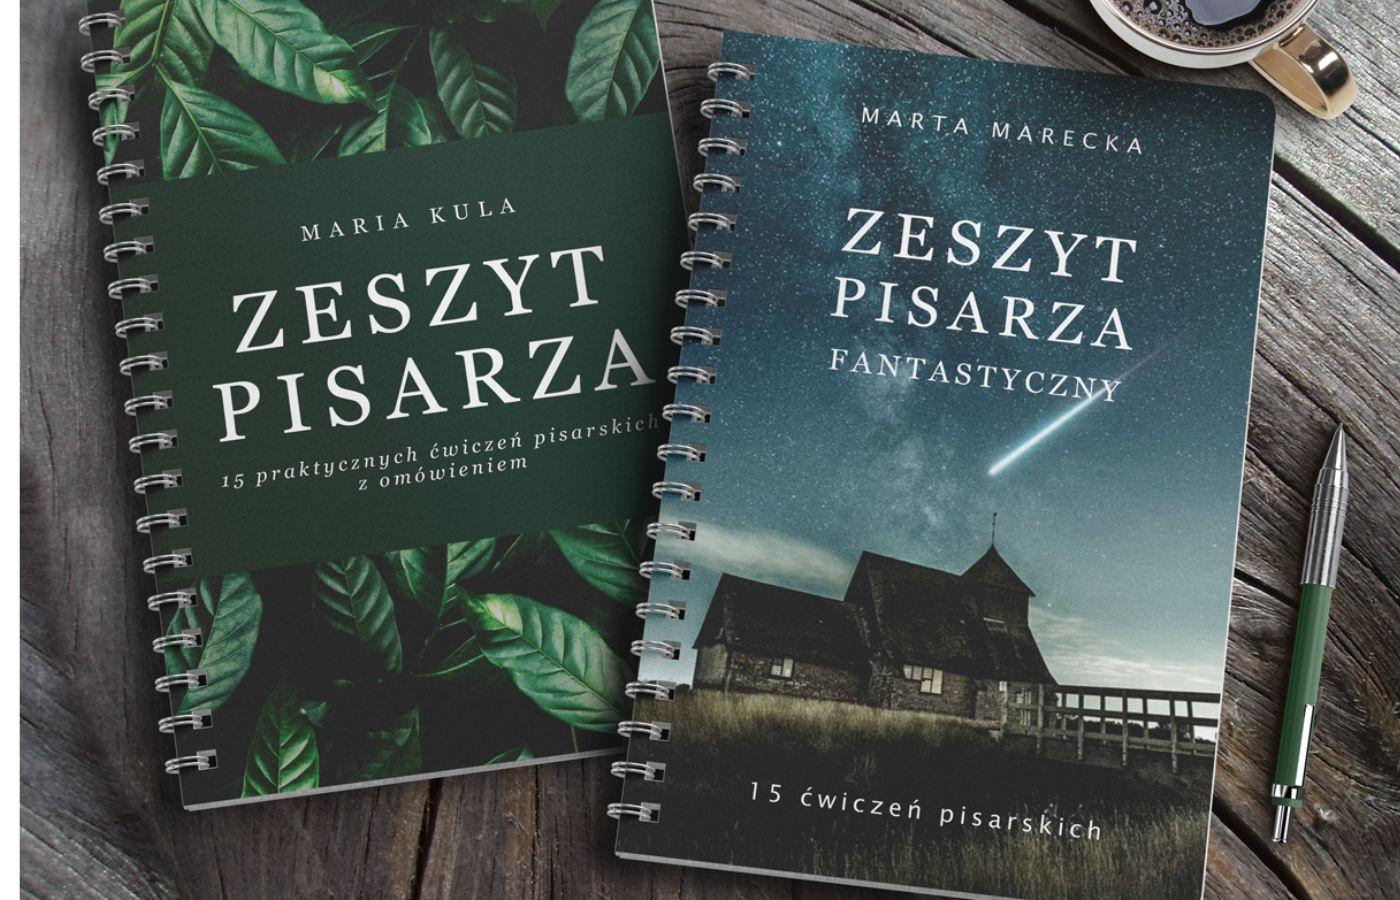 „Zeszyt Pisarza” Maria Kula oraz „Zeszyt Pisarza Fantastyczny” Marta Marecka, 79 zł każdy, www.pisarskabanda.com (Fot. materiały prasowe)